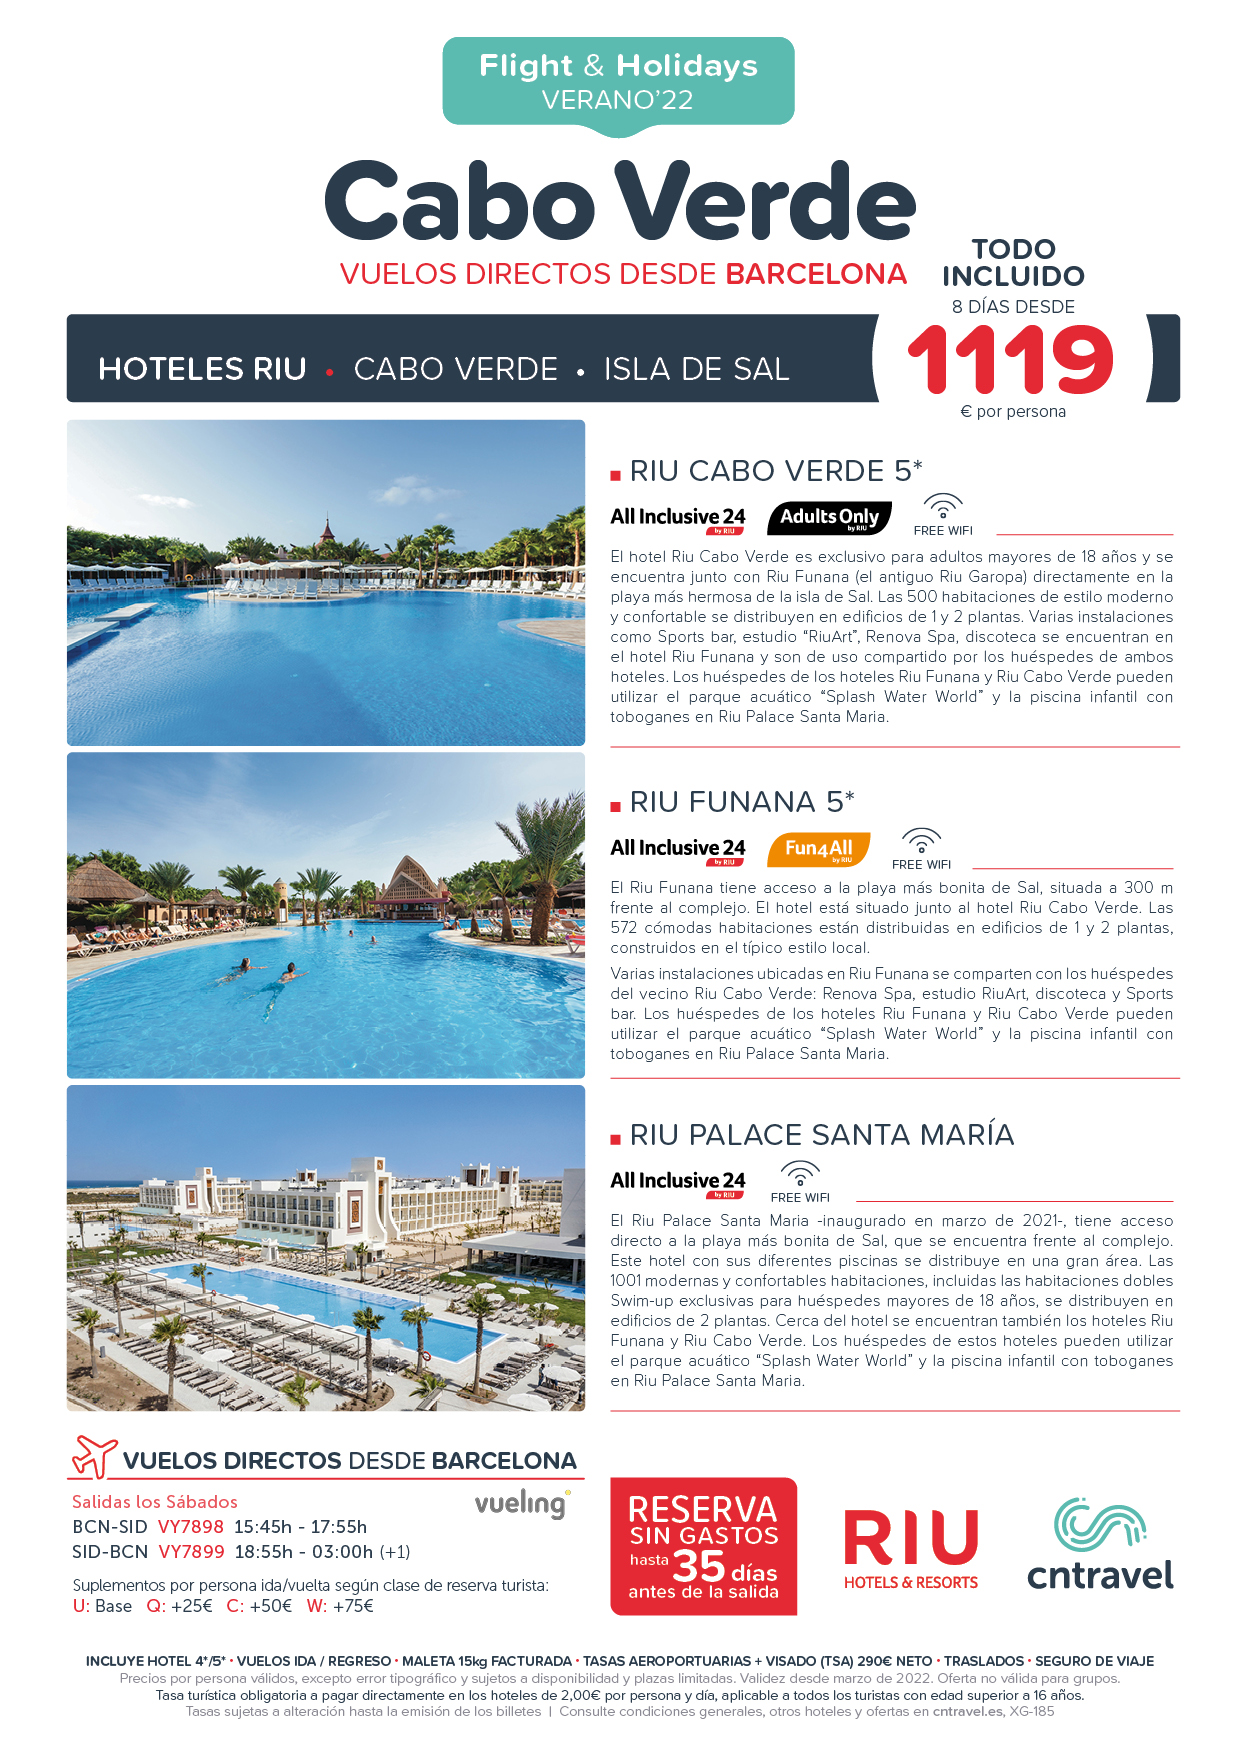 Oferta CN Travel Junio a Septiembre 2022 Vacaciones en Cabo Verde Hoteles Riu Todo Incluido 8 dias salida en vuelo directo desde Barcelona